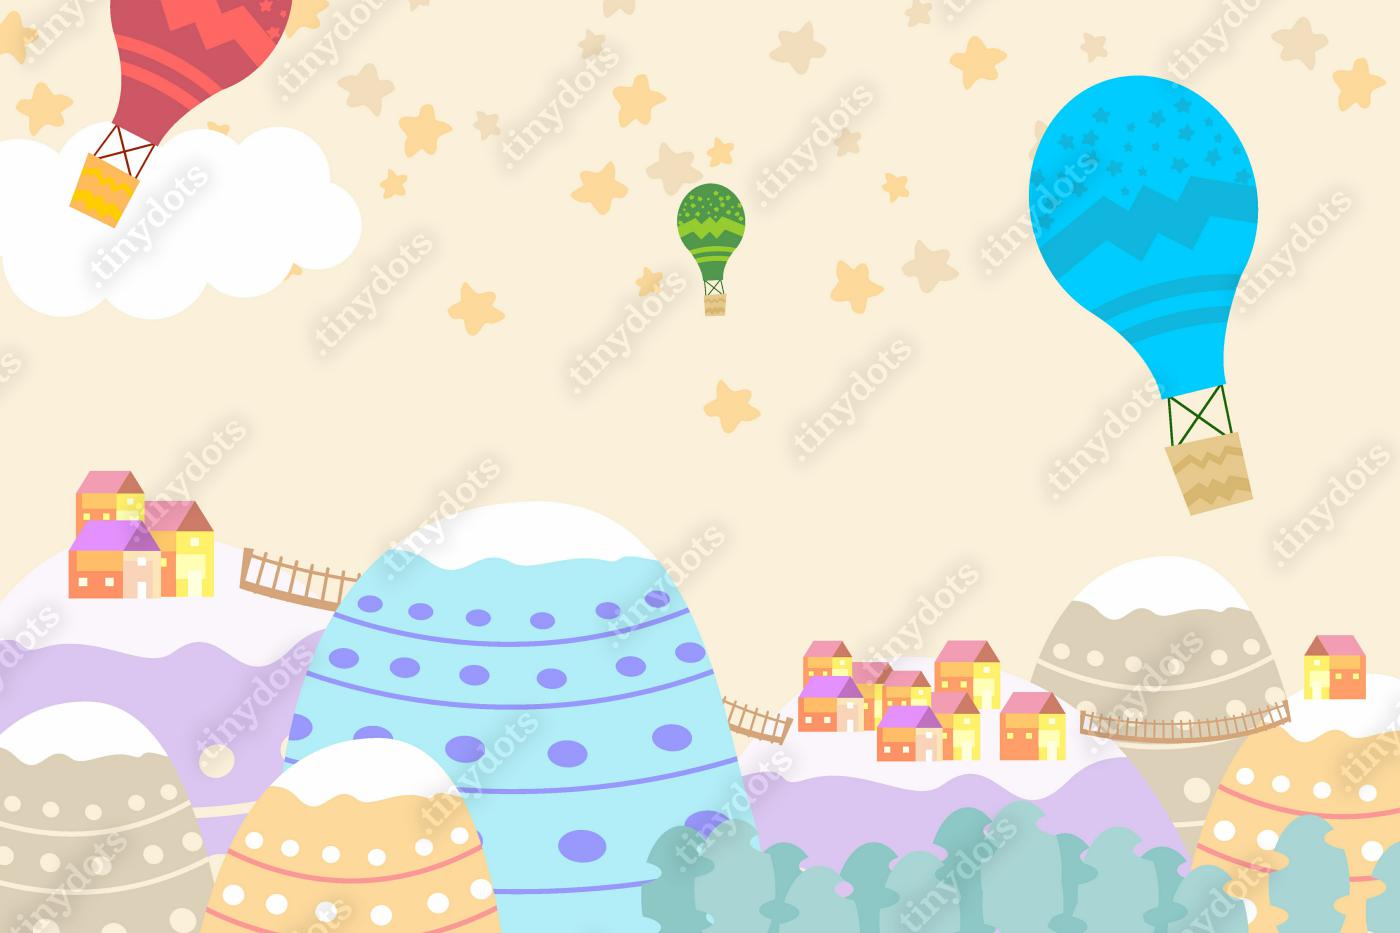 Fotobehang Grafische illustratie voor kinderen kamer behang met huis hemel vol sterren, trap, heuvel, en luchtballon. Kan voor druk op de muur, hoofdkussens, het binnenland van decoratiejonge geitjes, babydraag, t-shirt, en kaart gebruiken